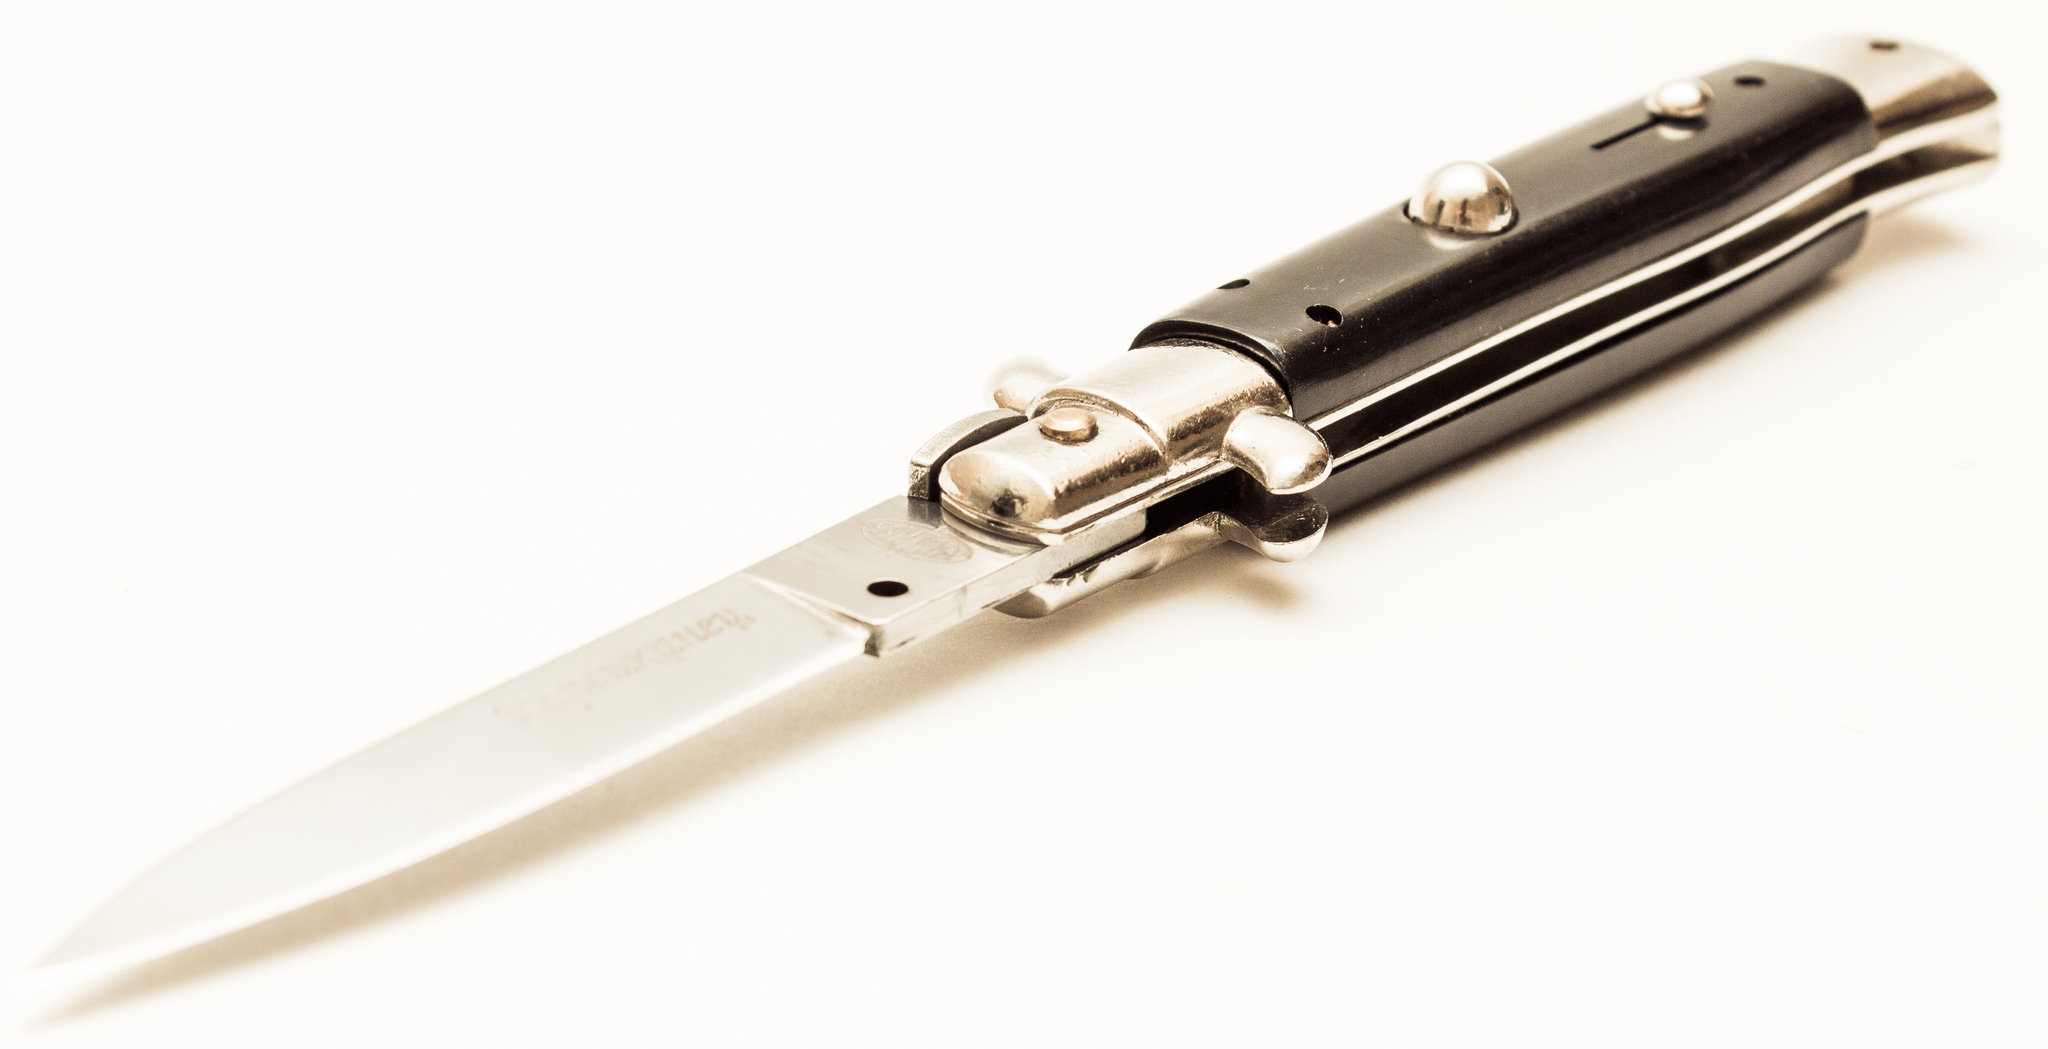 Выкидной нож Корсиканец -  автоматический нож от Витязь 